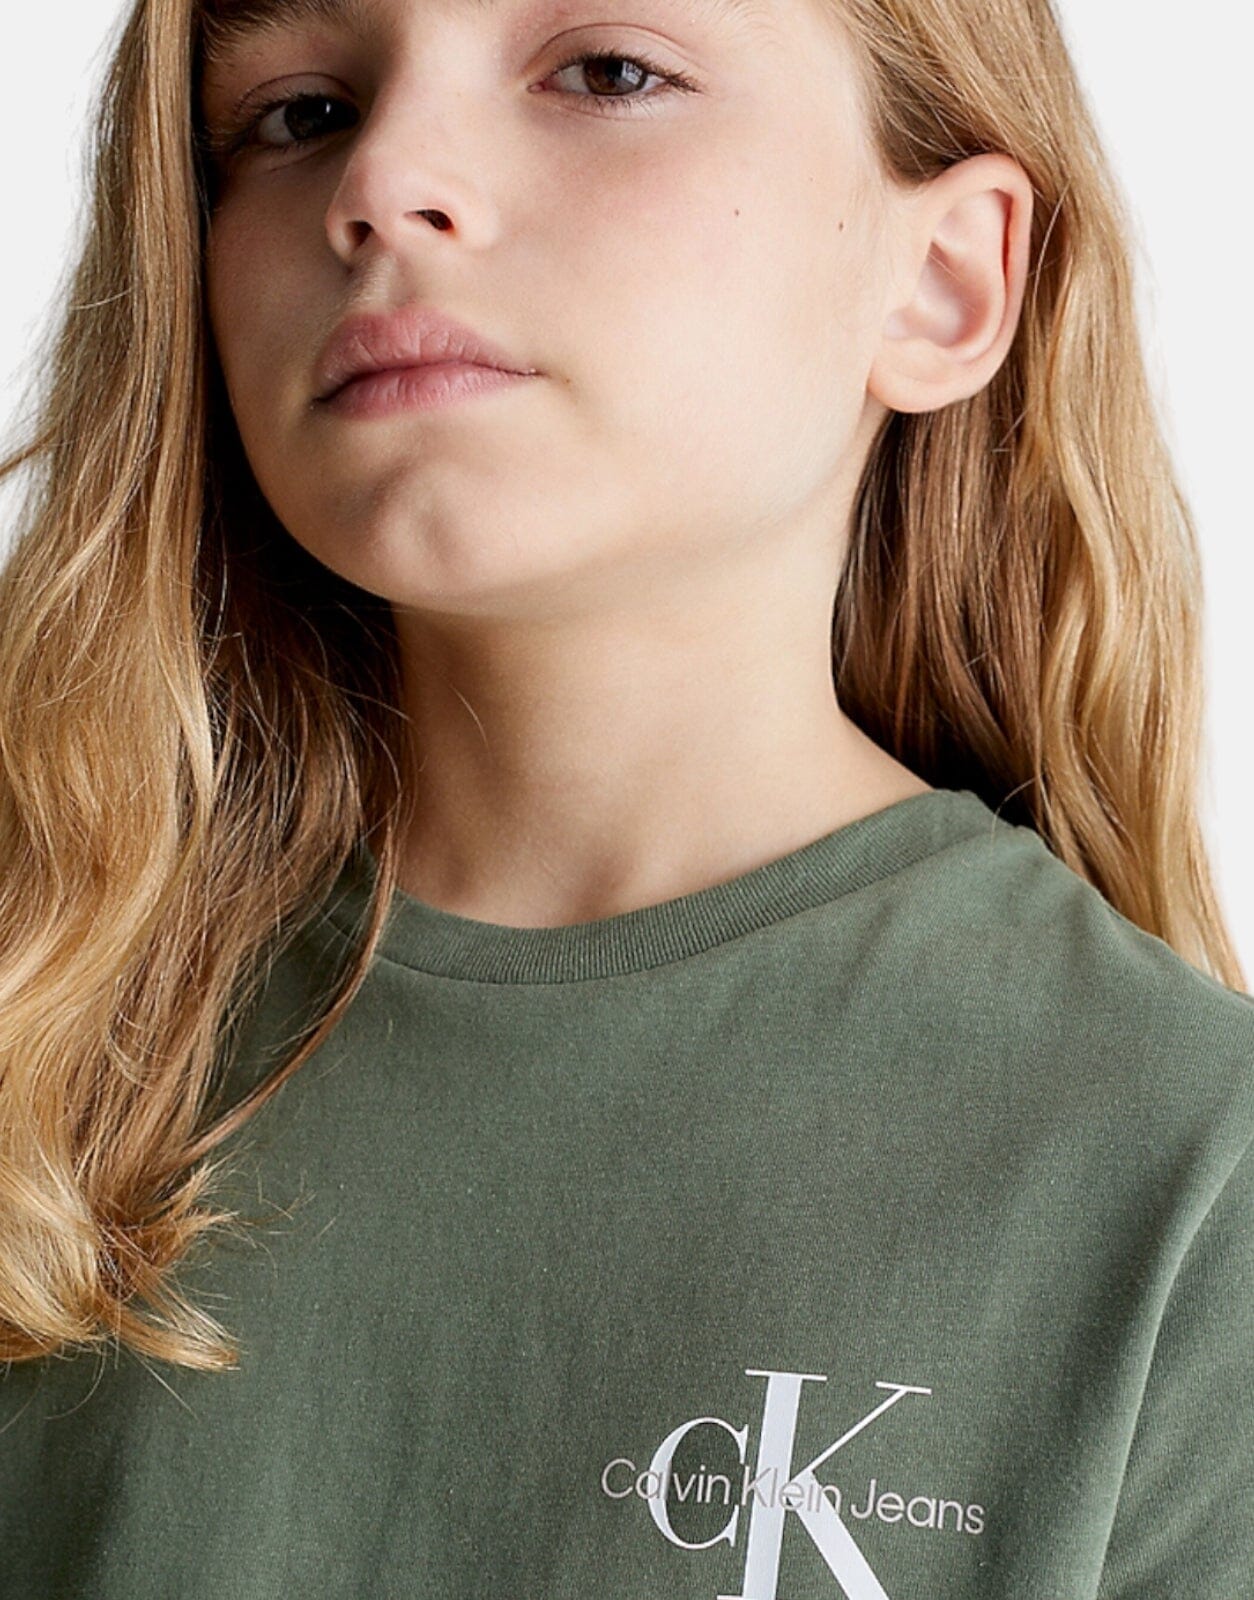 Calvin Klein Kids Chest Monogram T-Shirt - Subwear